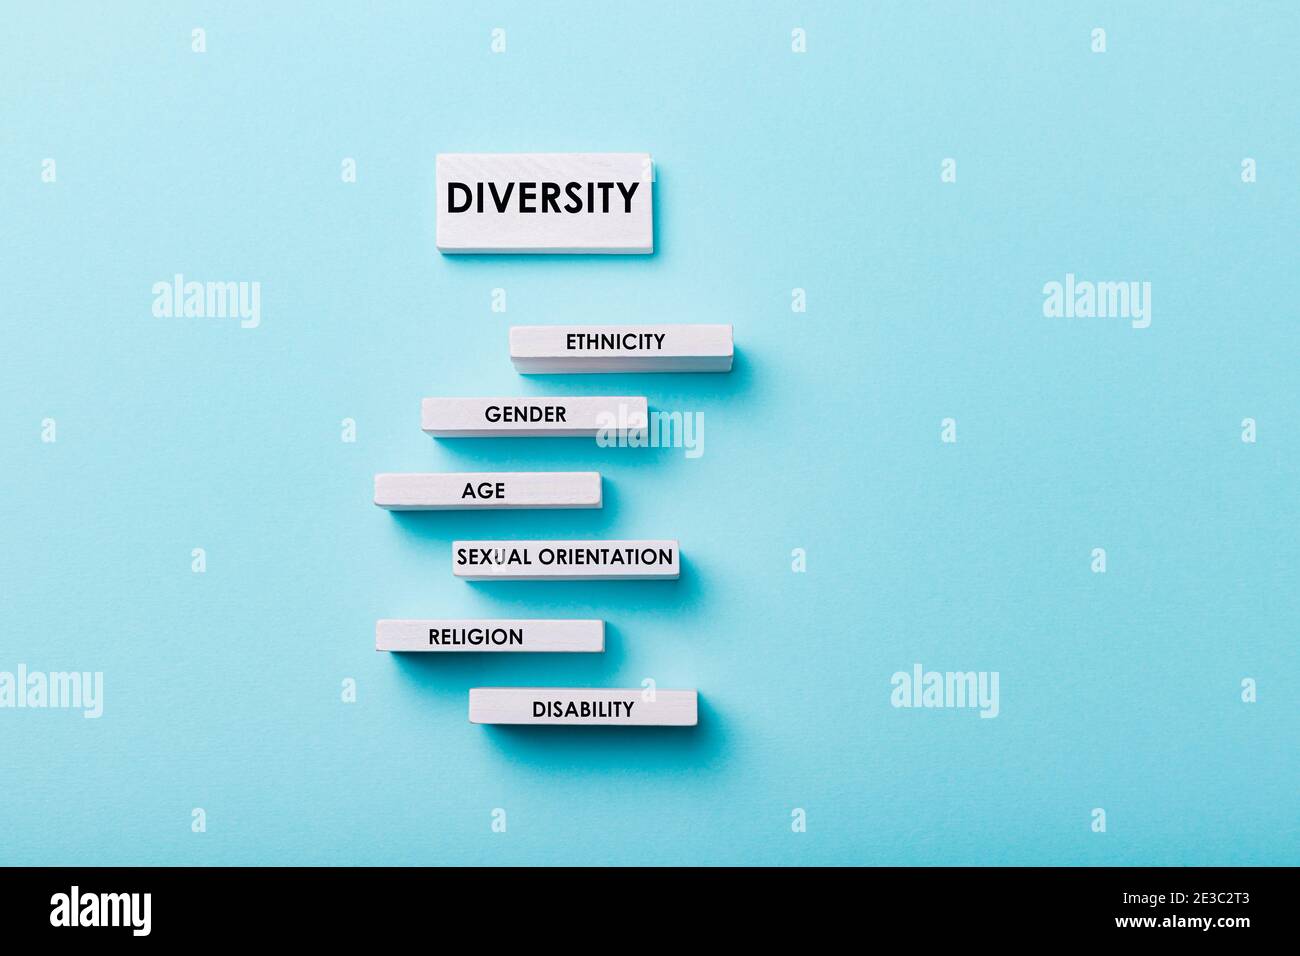 Concept de diversité et d'égalité. Groupes ayant des mots d'origine ethnique, de sexe, d'âge, d'orientation sexuelle, de religion et de handicap Banque D'Images